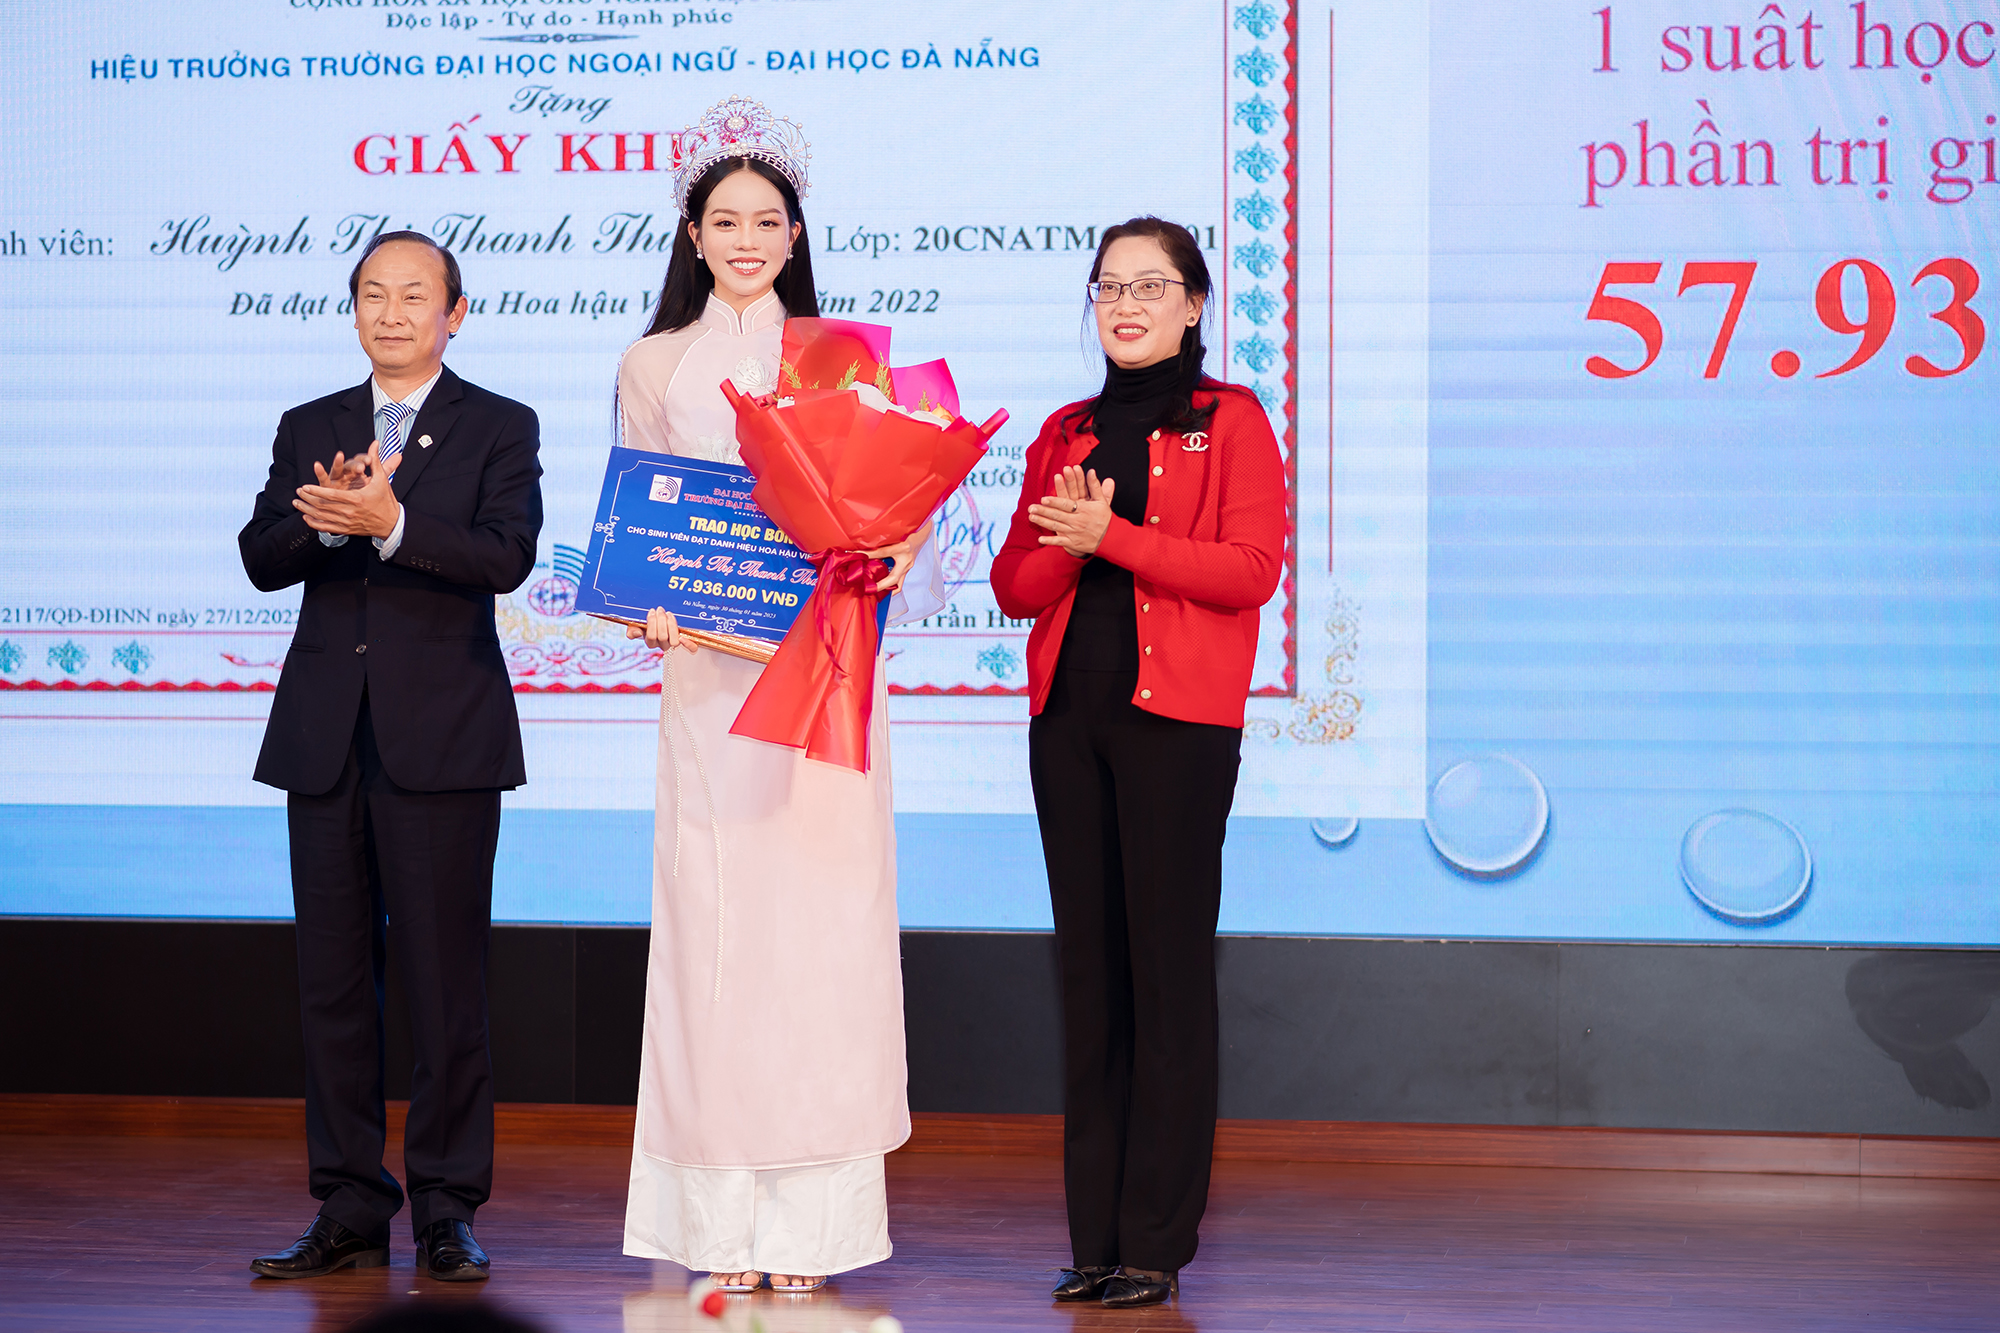 Nhan sắc người đẹp Đà Nẵng sau 2 tháng đăng quang Hoa hậu Việt Nam 2022 - Ảnh 4.